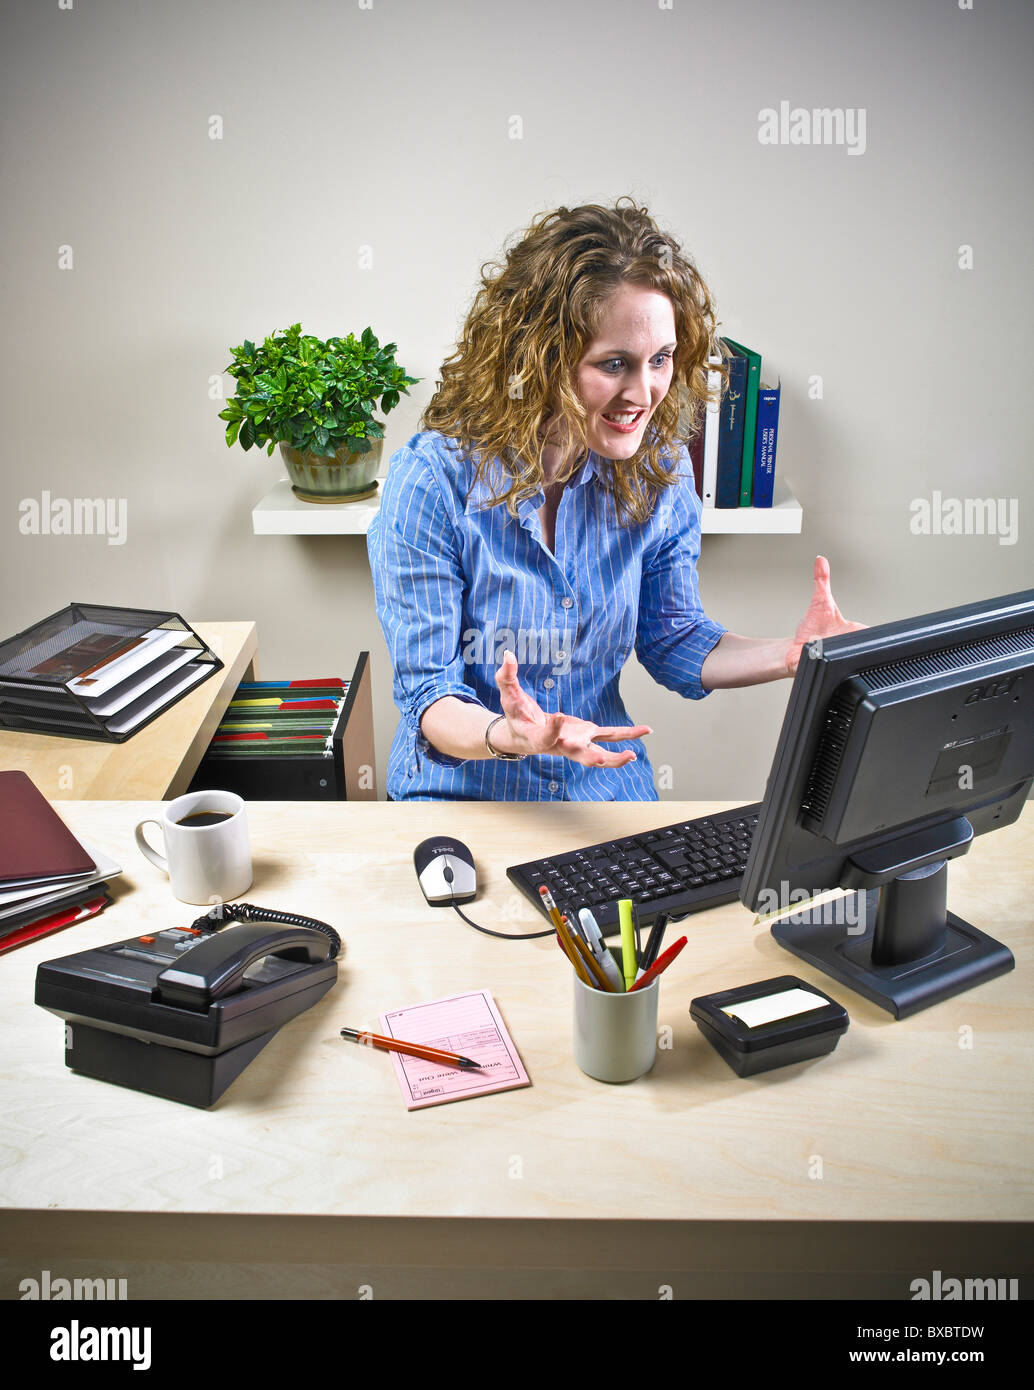 Weibliche Sekretärin, executive, Büroangestellte am Computertisch. Stress-Situation. Unorganisiert. Stockfoto